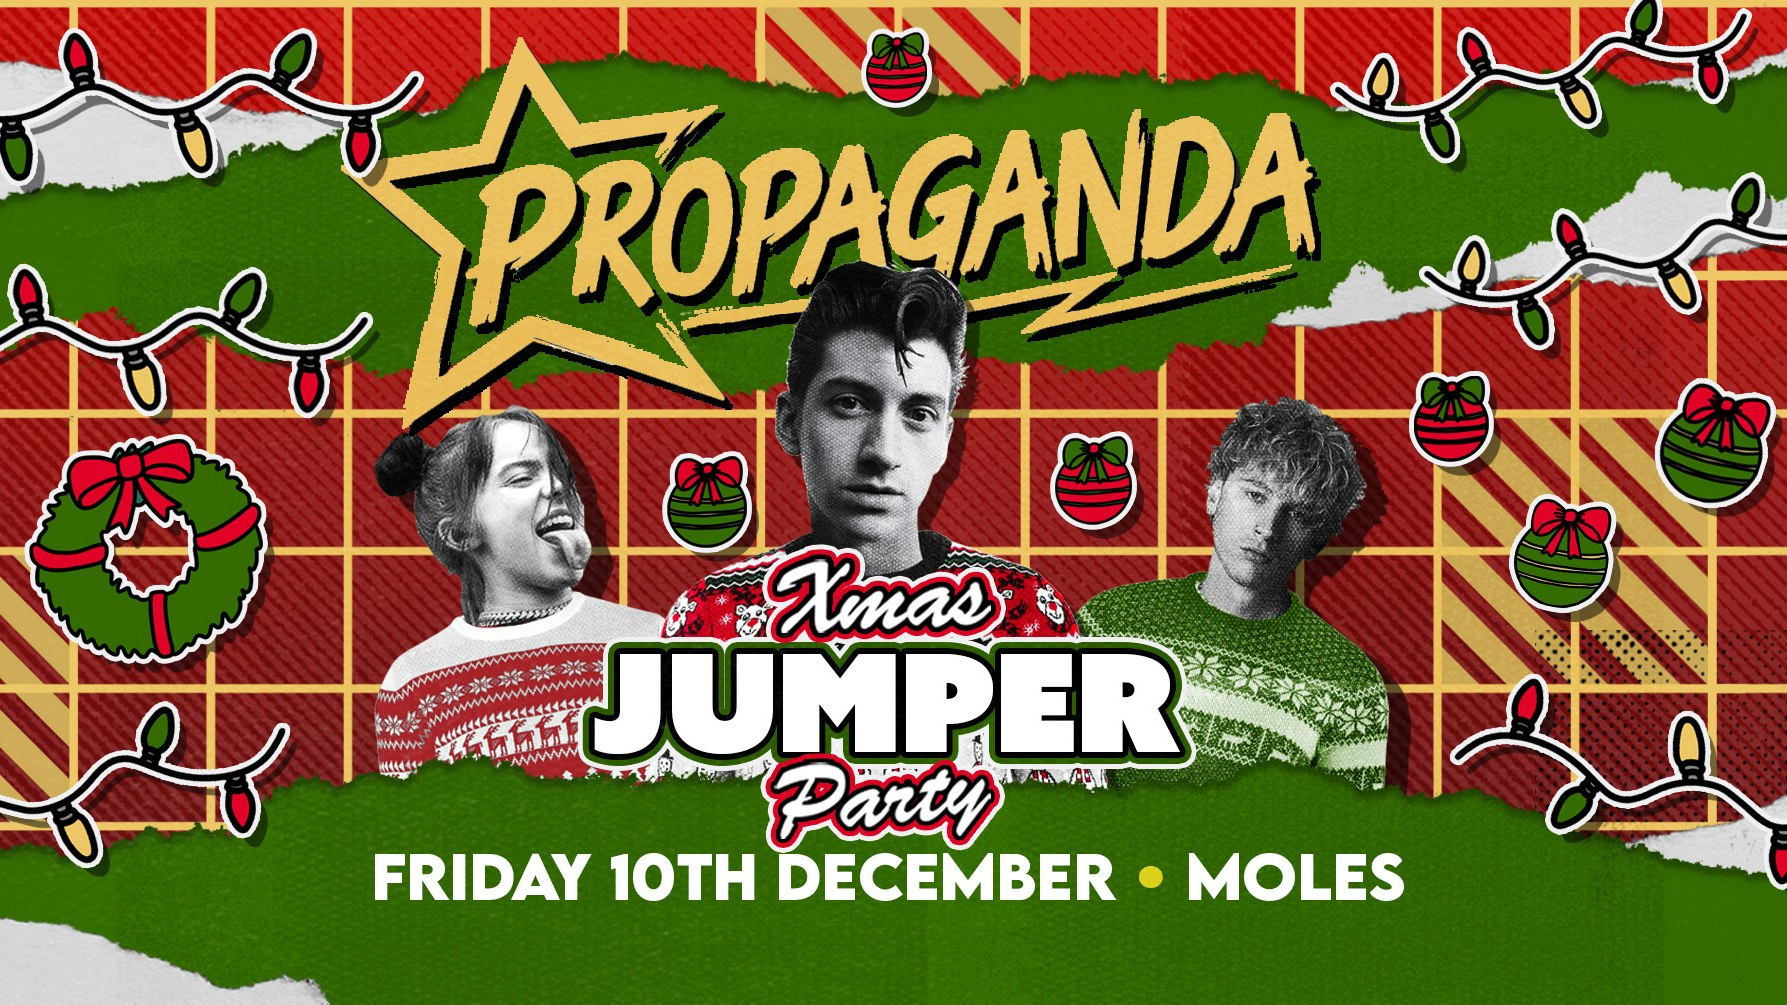 Propaganda Bath – Xmas Jumper Party!